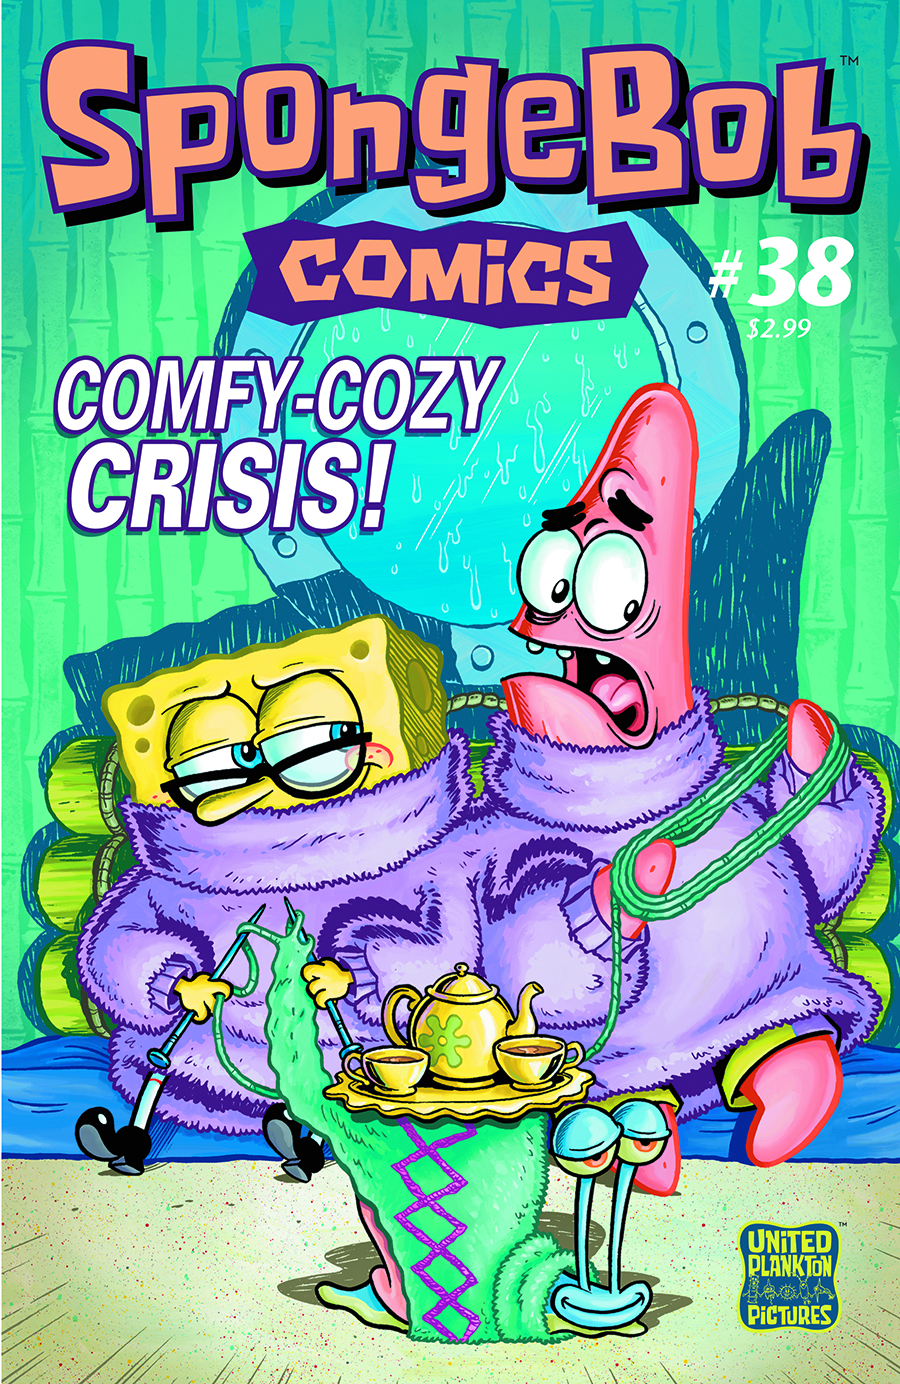 SPONGEBOB COMICS #38